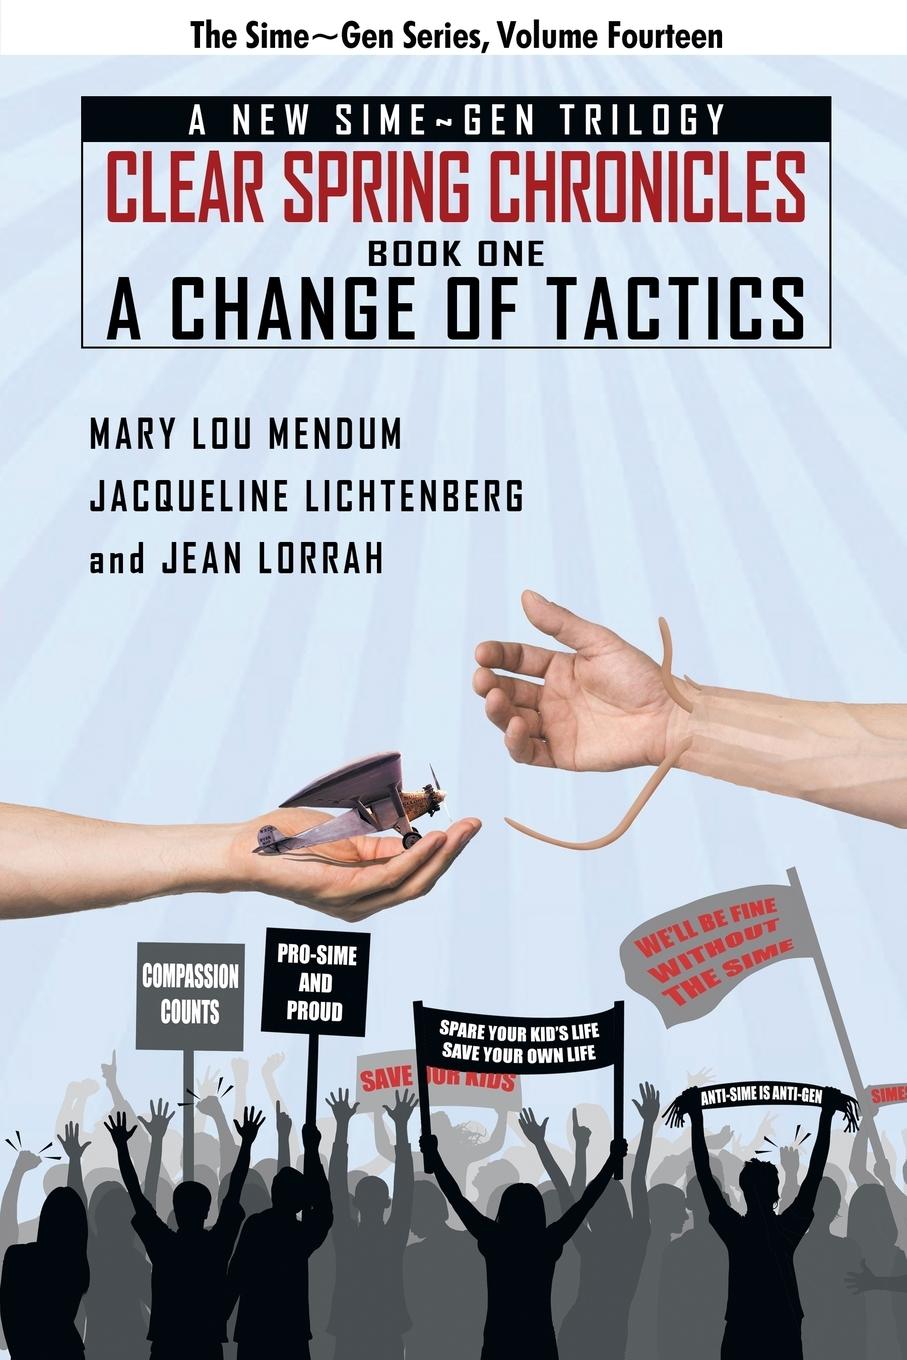 A Change of Tactics - Lichtenberg, Jacqueline Mendum, Mary Lou Lorrah, Jean